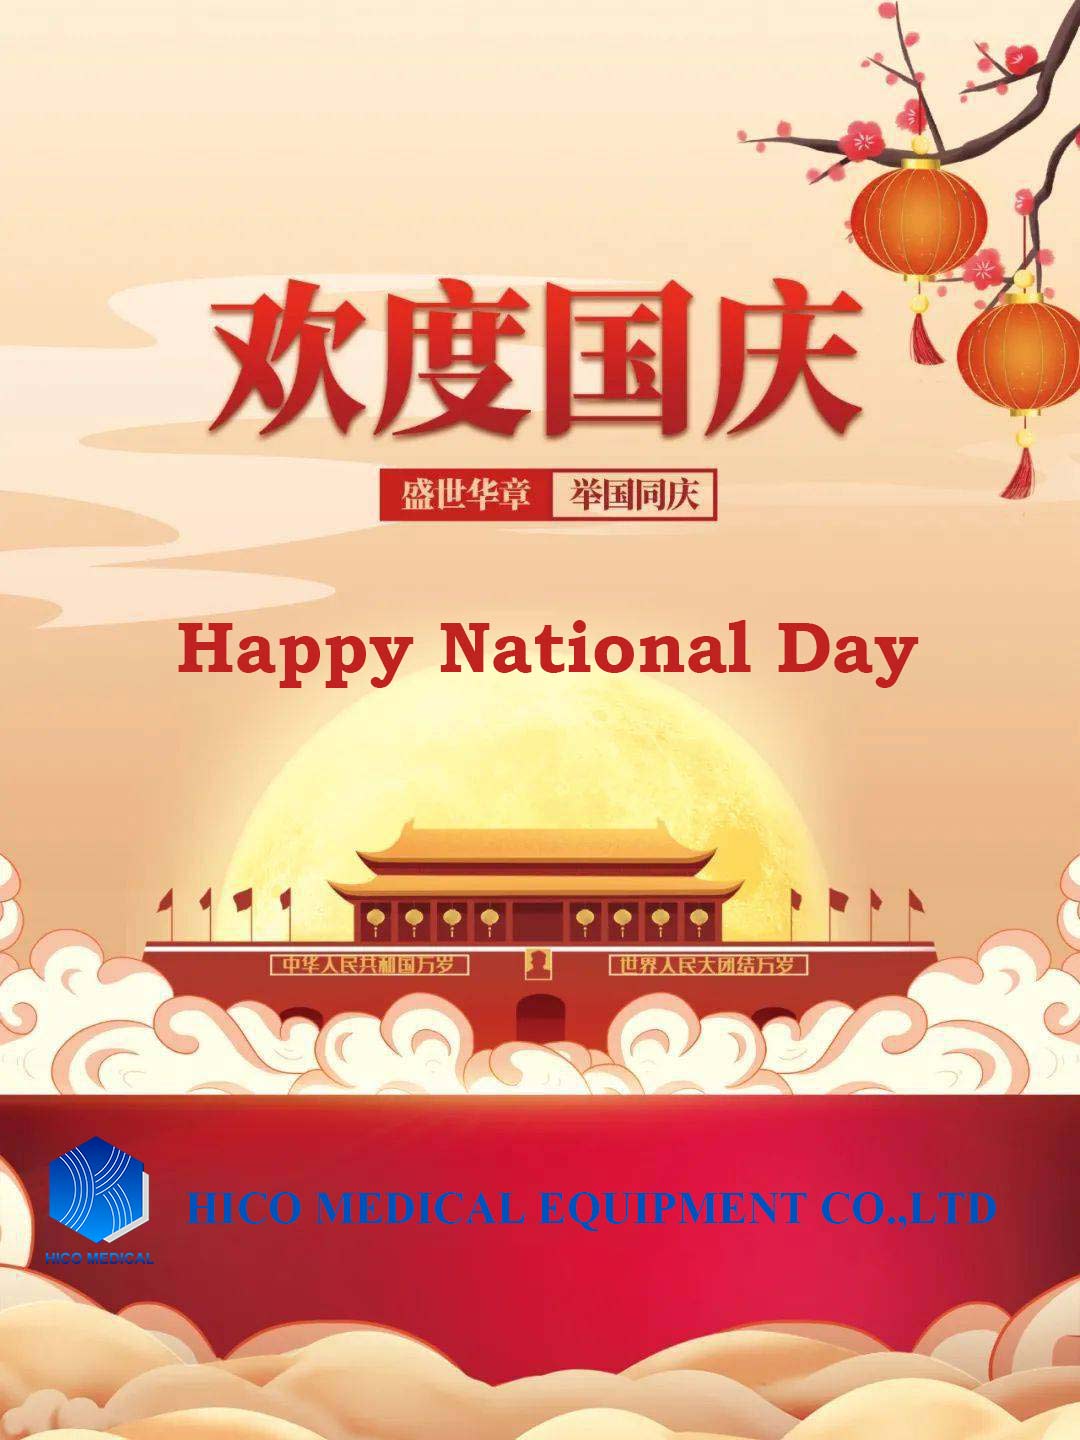 Avviso di festività per la Giornata Nazionale della Cina